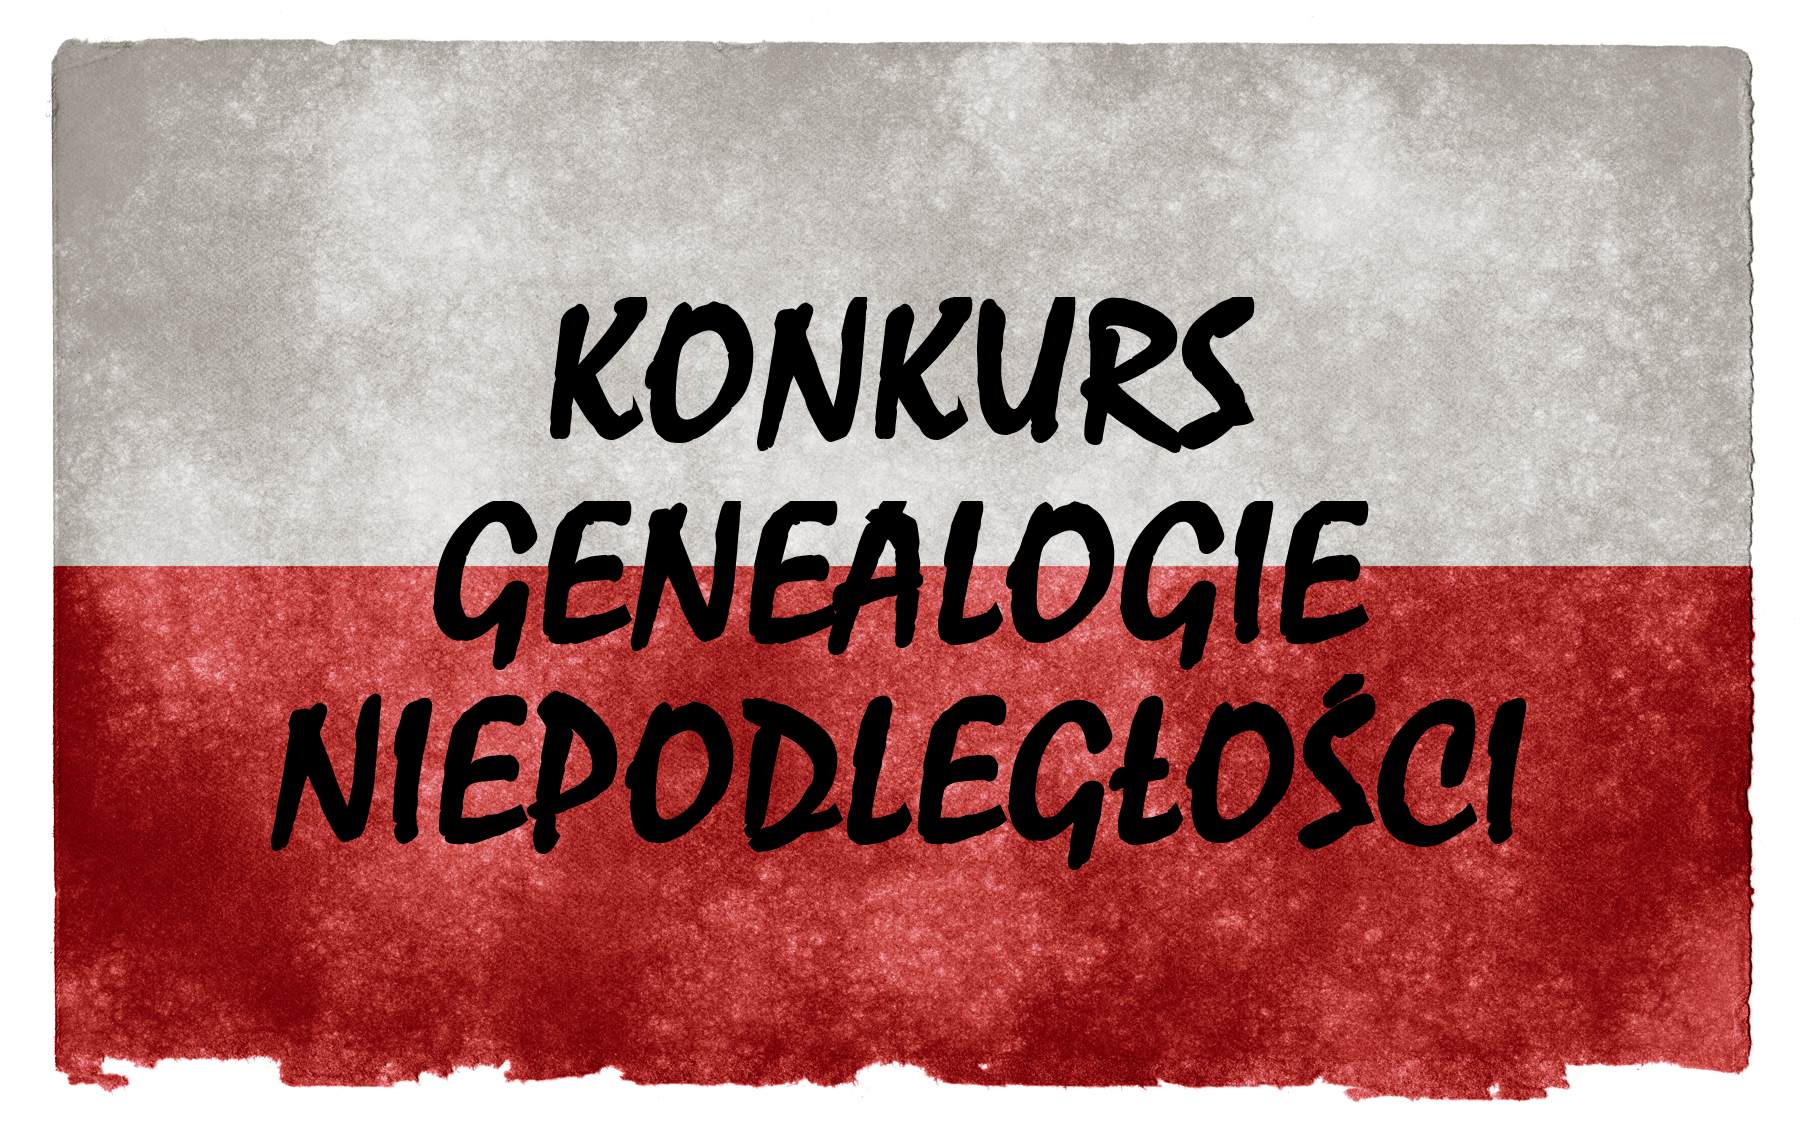 biało-czerwona flaga Polski wpisana na teksturę włóknistego papieru z czarnym napisem kapitalikami: KONKURS GENEALOGIE NIEPODLEGŁOŚCI